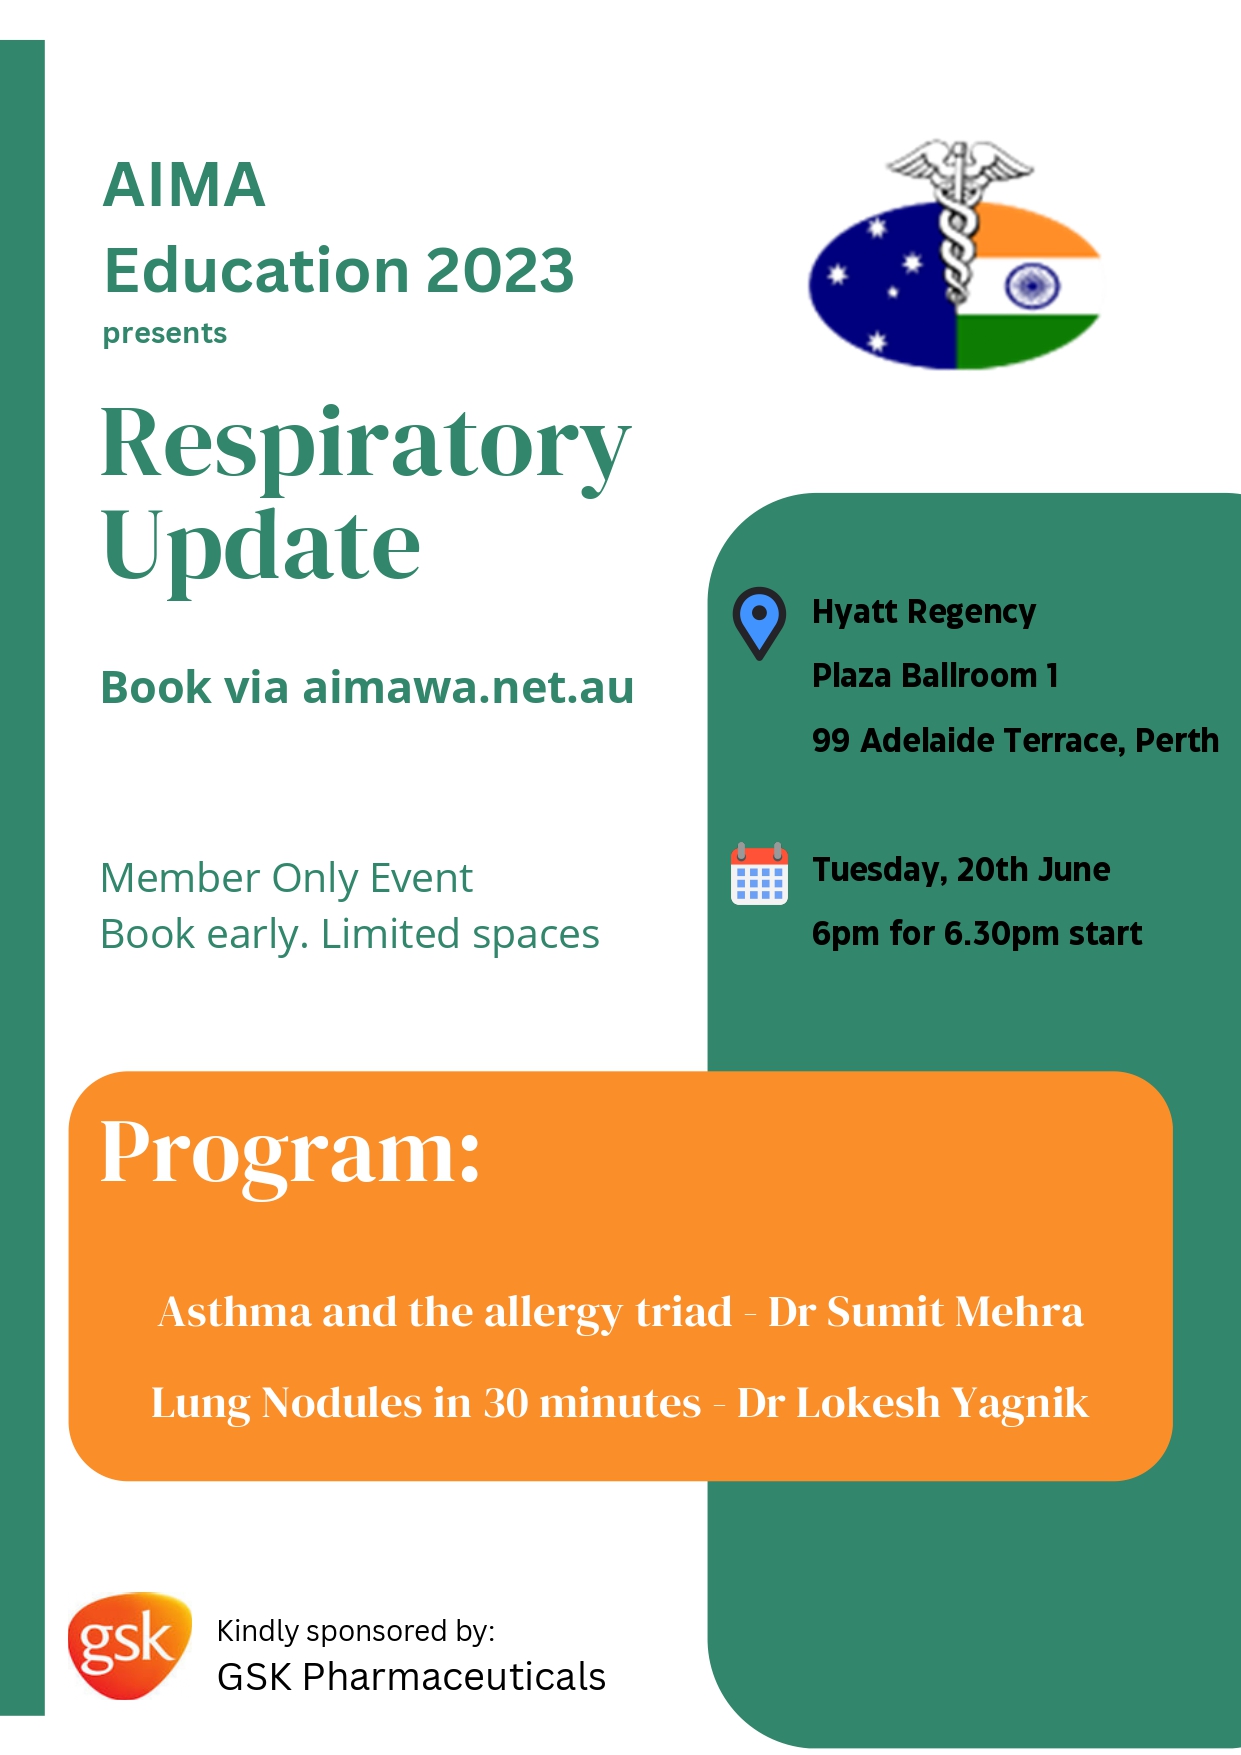 AIMA Education Event 2023